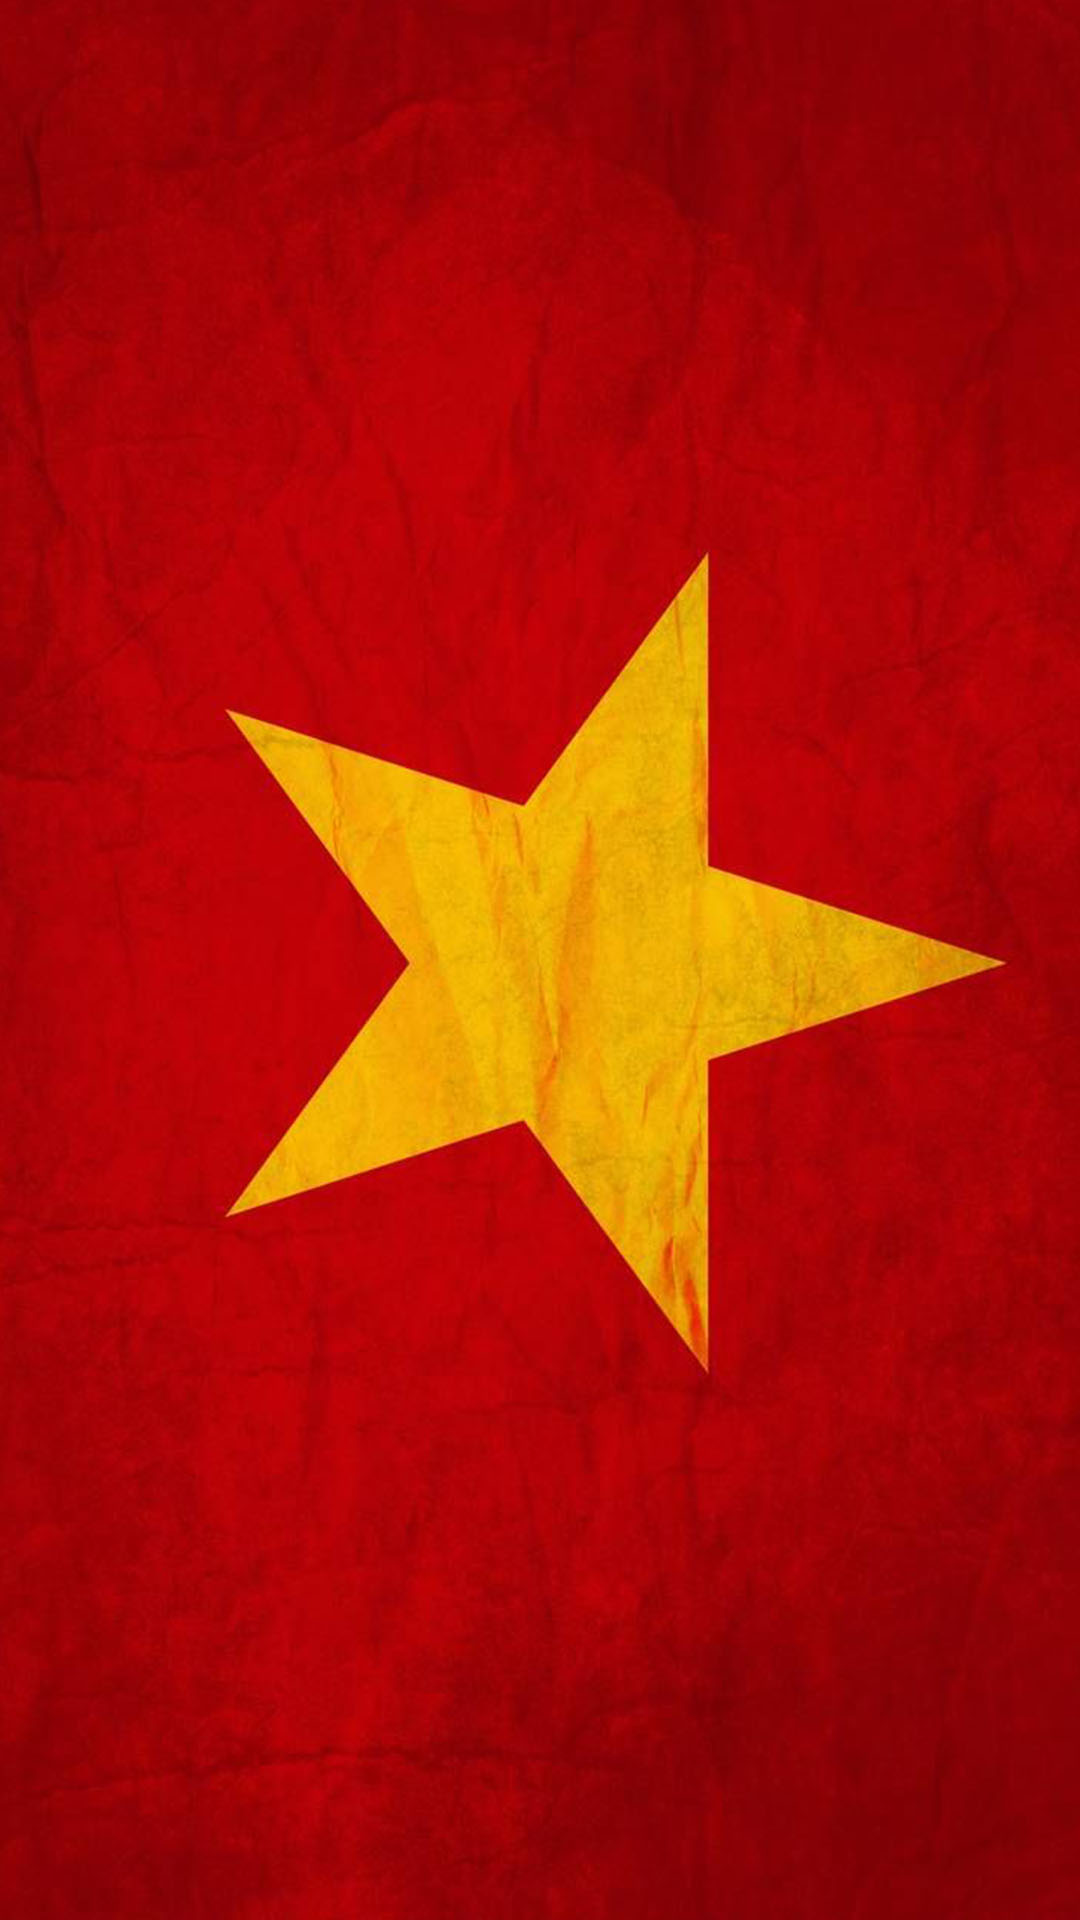 Bạn đang tìm kiếm một hình nền đẹp cho màn hình 4K của mình? Hãy xem ngay hình nền cờ Việt Nam 4K tuyệt đẹp với các chi tiết rõ nét và sắc màu tươi sáng. Cùng tận hưởng cảm giác hào hứng và phấn khởi khi nhìn thấy cờ Việt Nam trên màn hình của bạn.